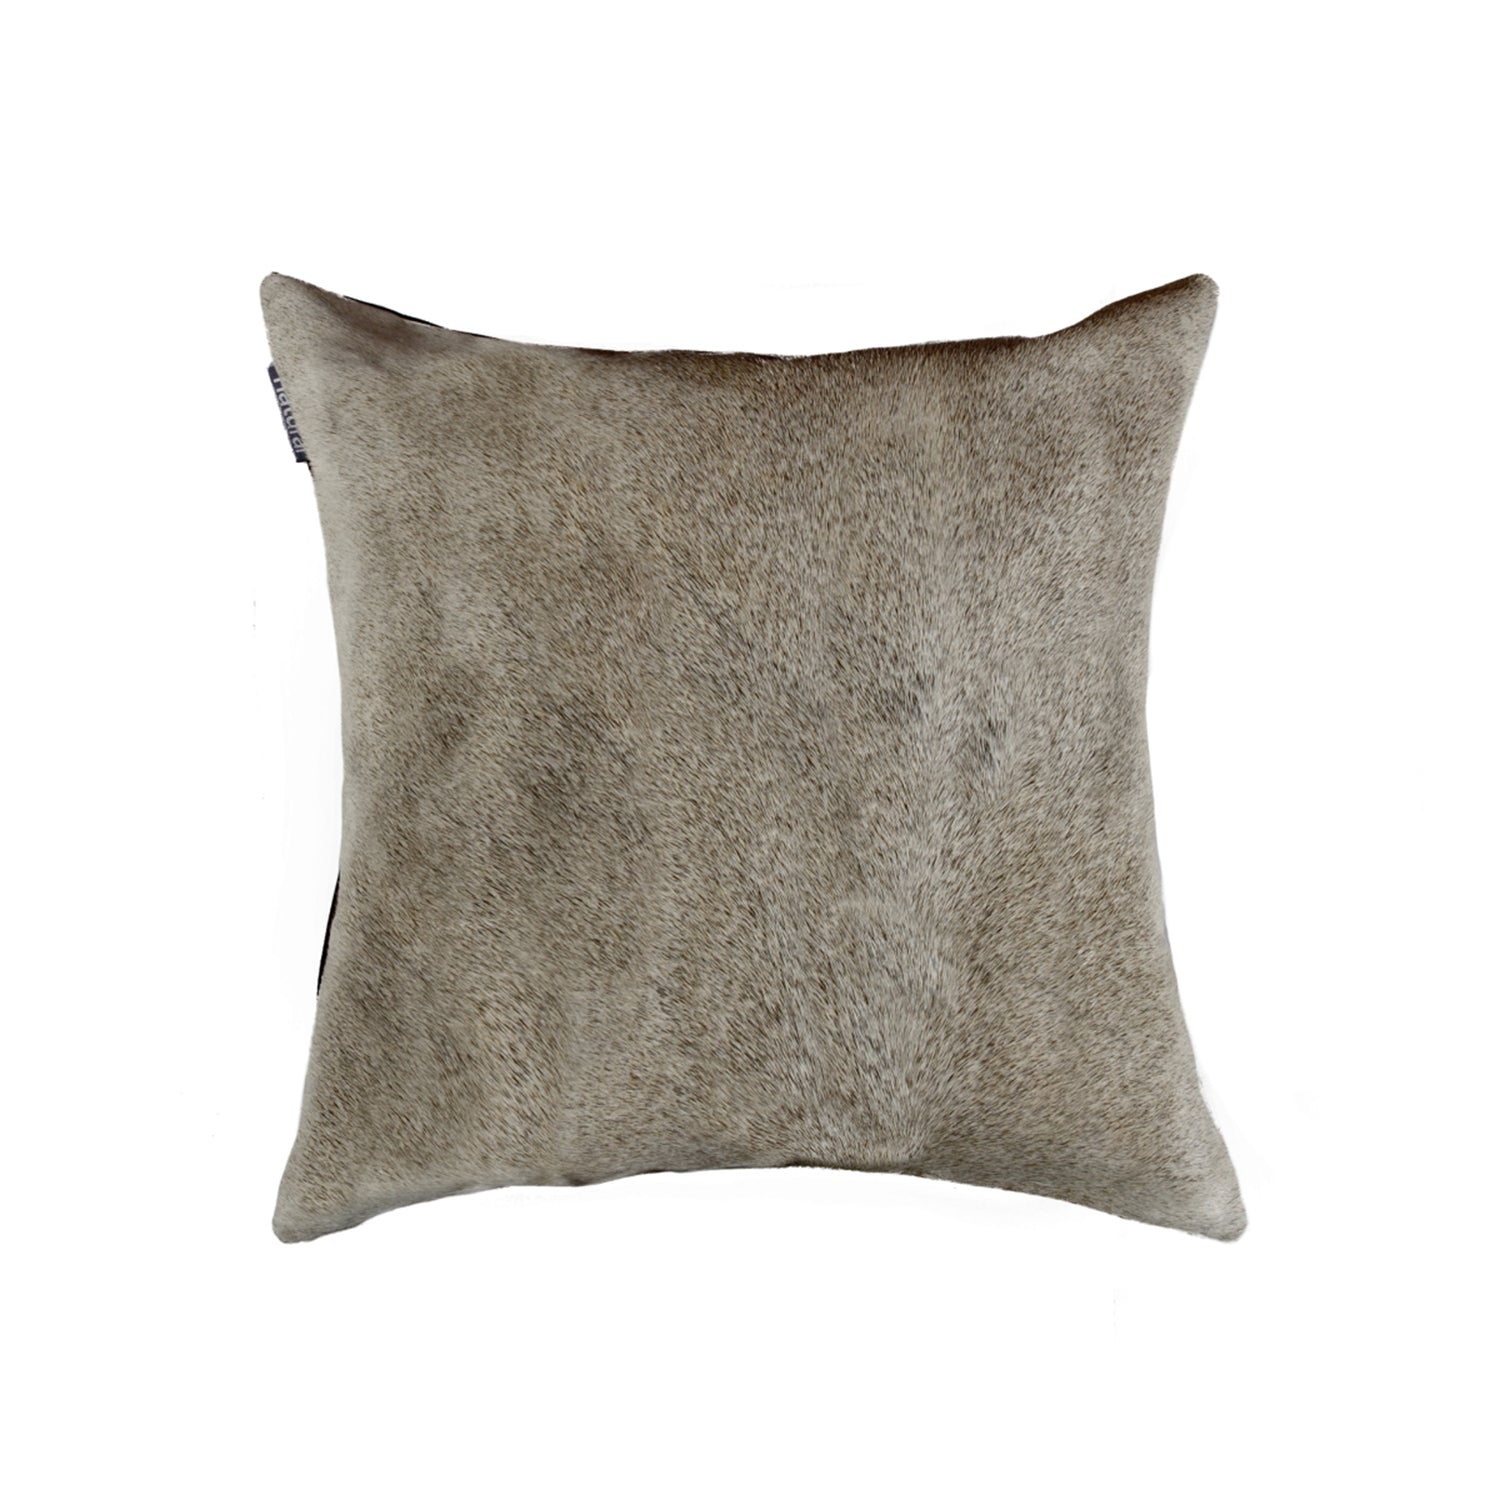 18" X 18" X 5" Gray Cowhide  Pillow